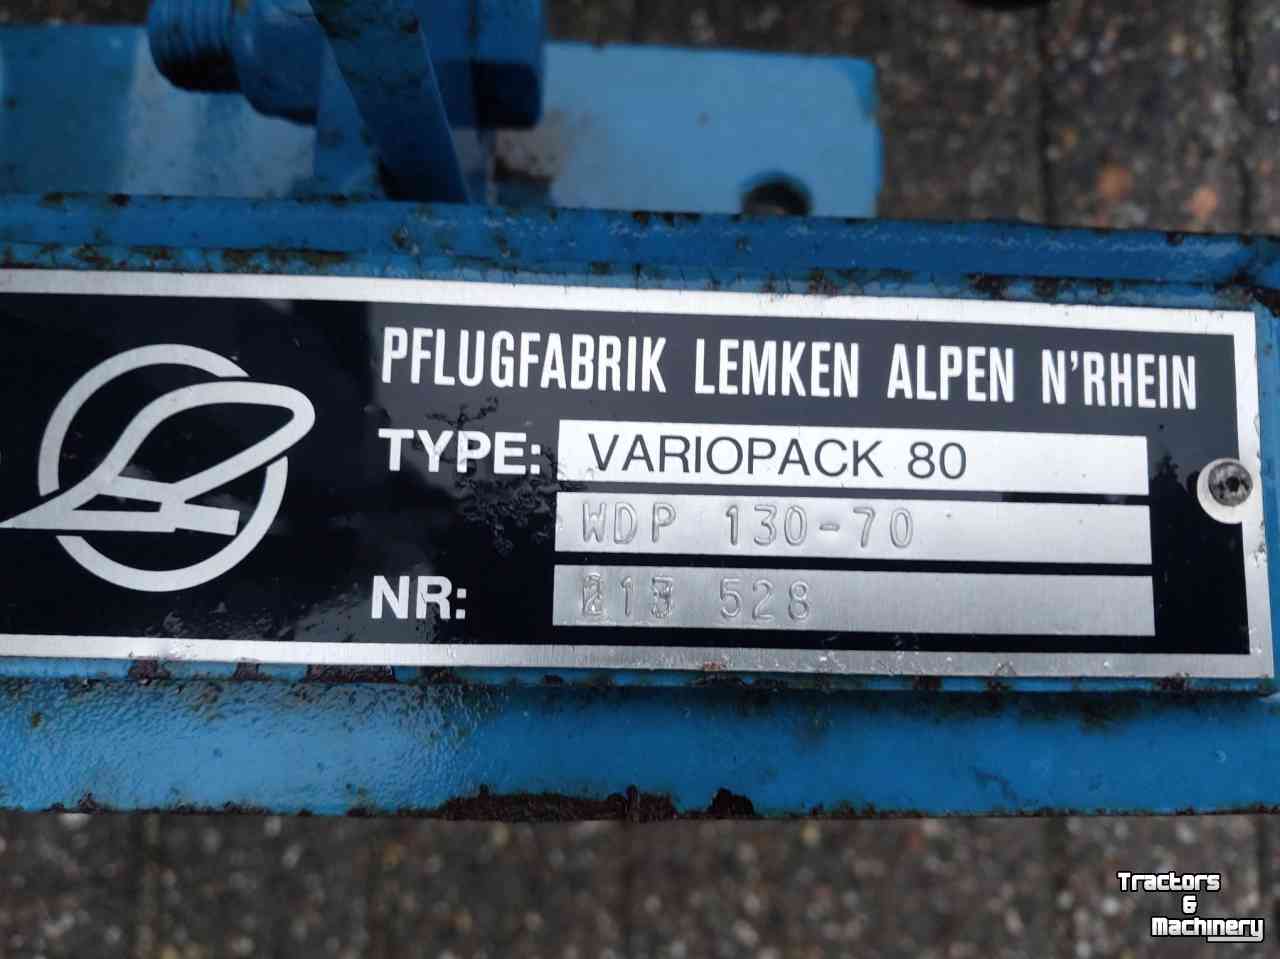 Untergrundpacker Lemken Variopack 80 met 45 graden  ringen